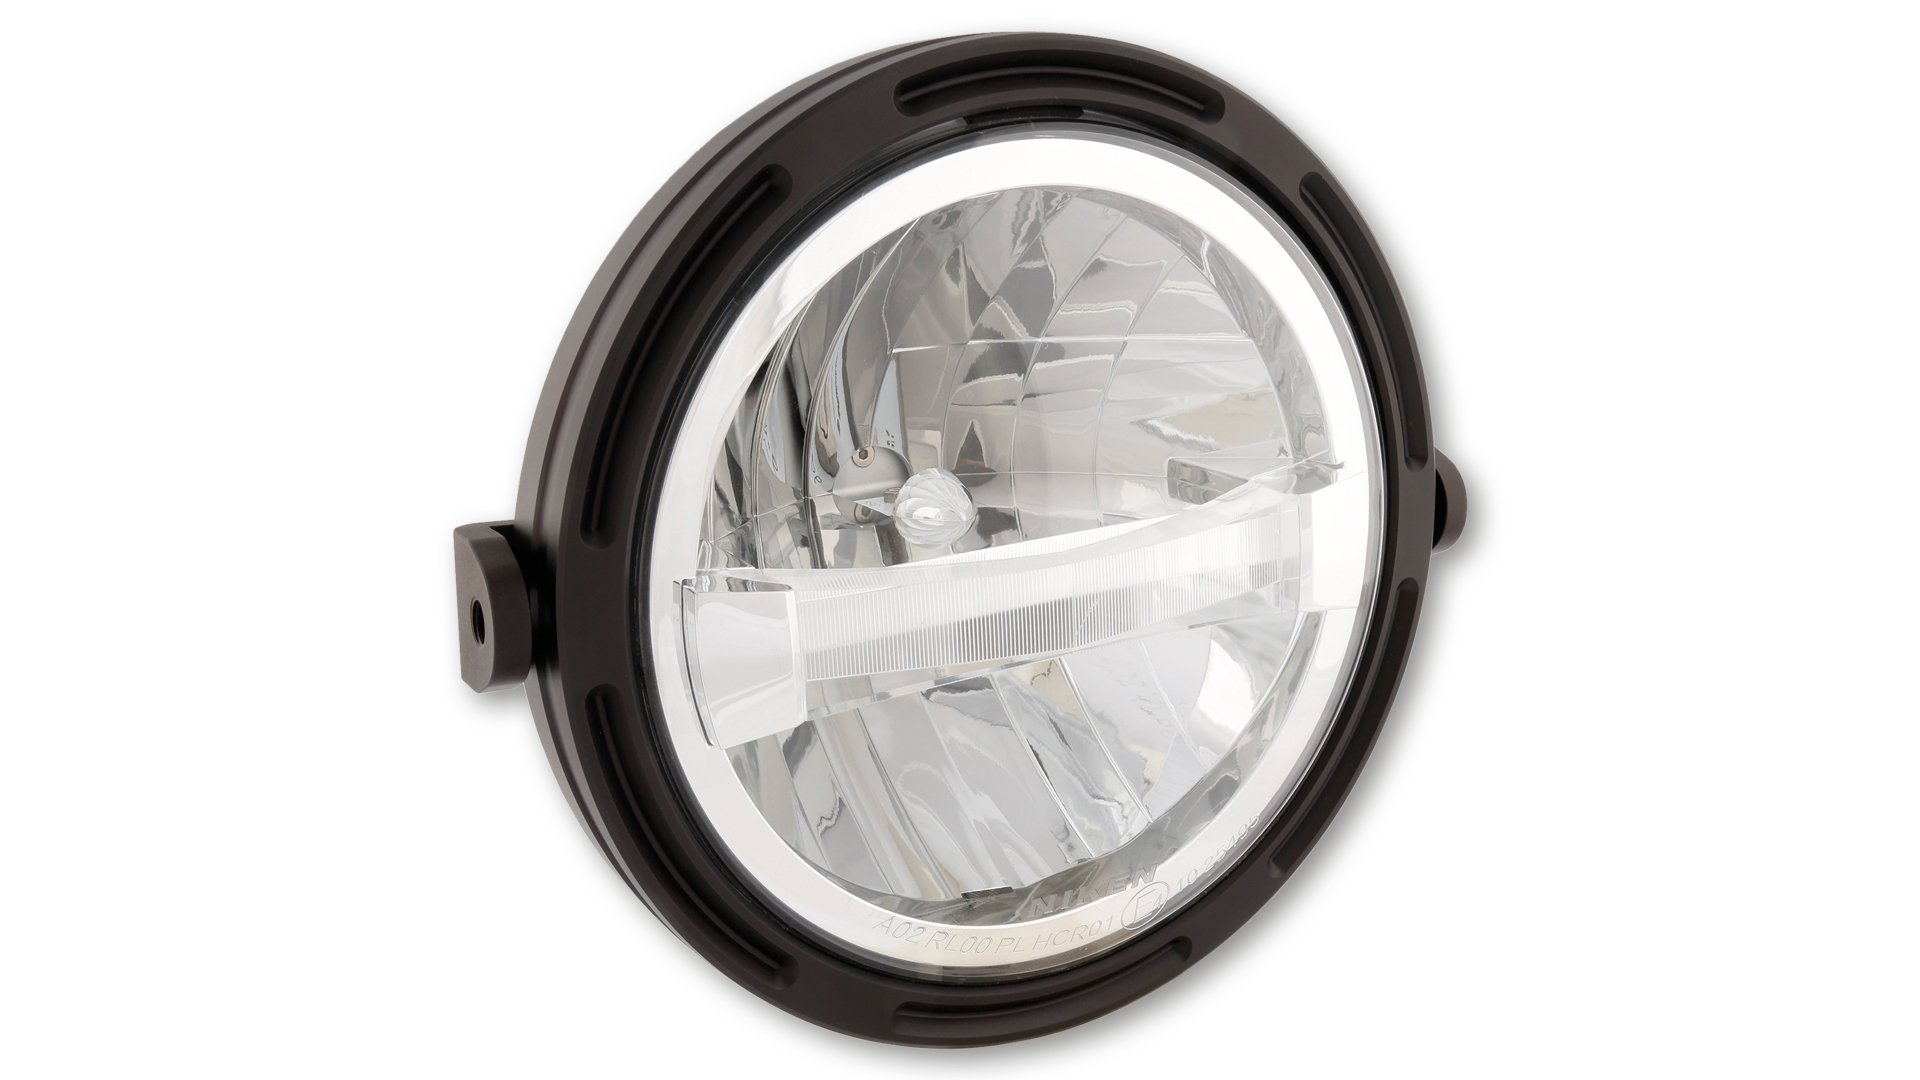 7 Zoll LED Hauptscheinwerfer TYP 4  mit Stand- und Tagfahrlicht Funktion, rund mit verchromtem Reflektor, E-geprüft. Erhältlich mit seitlicher oder unterer Befestigung.